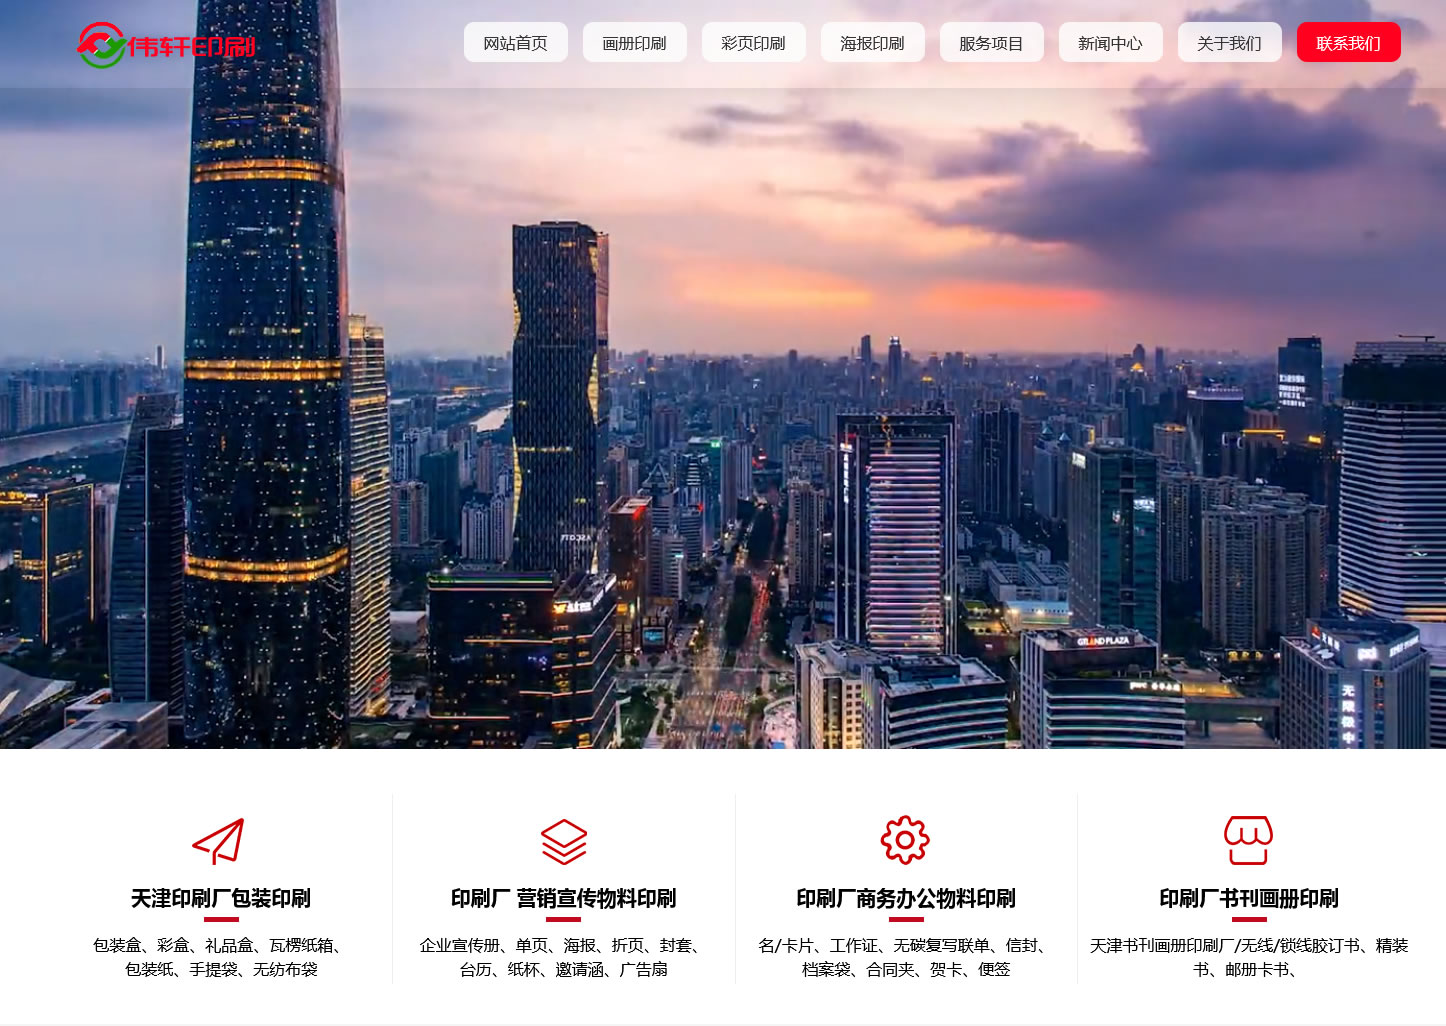 天津印刷厂官方网站建设项目开通上线啦！